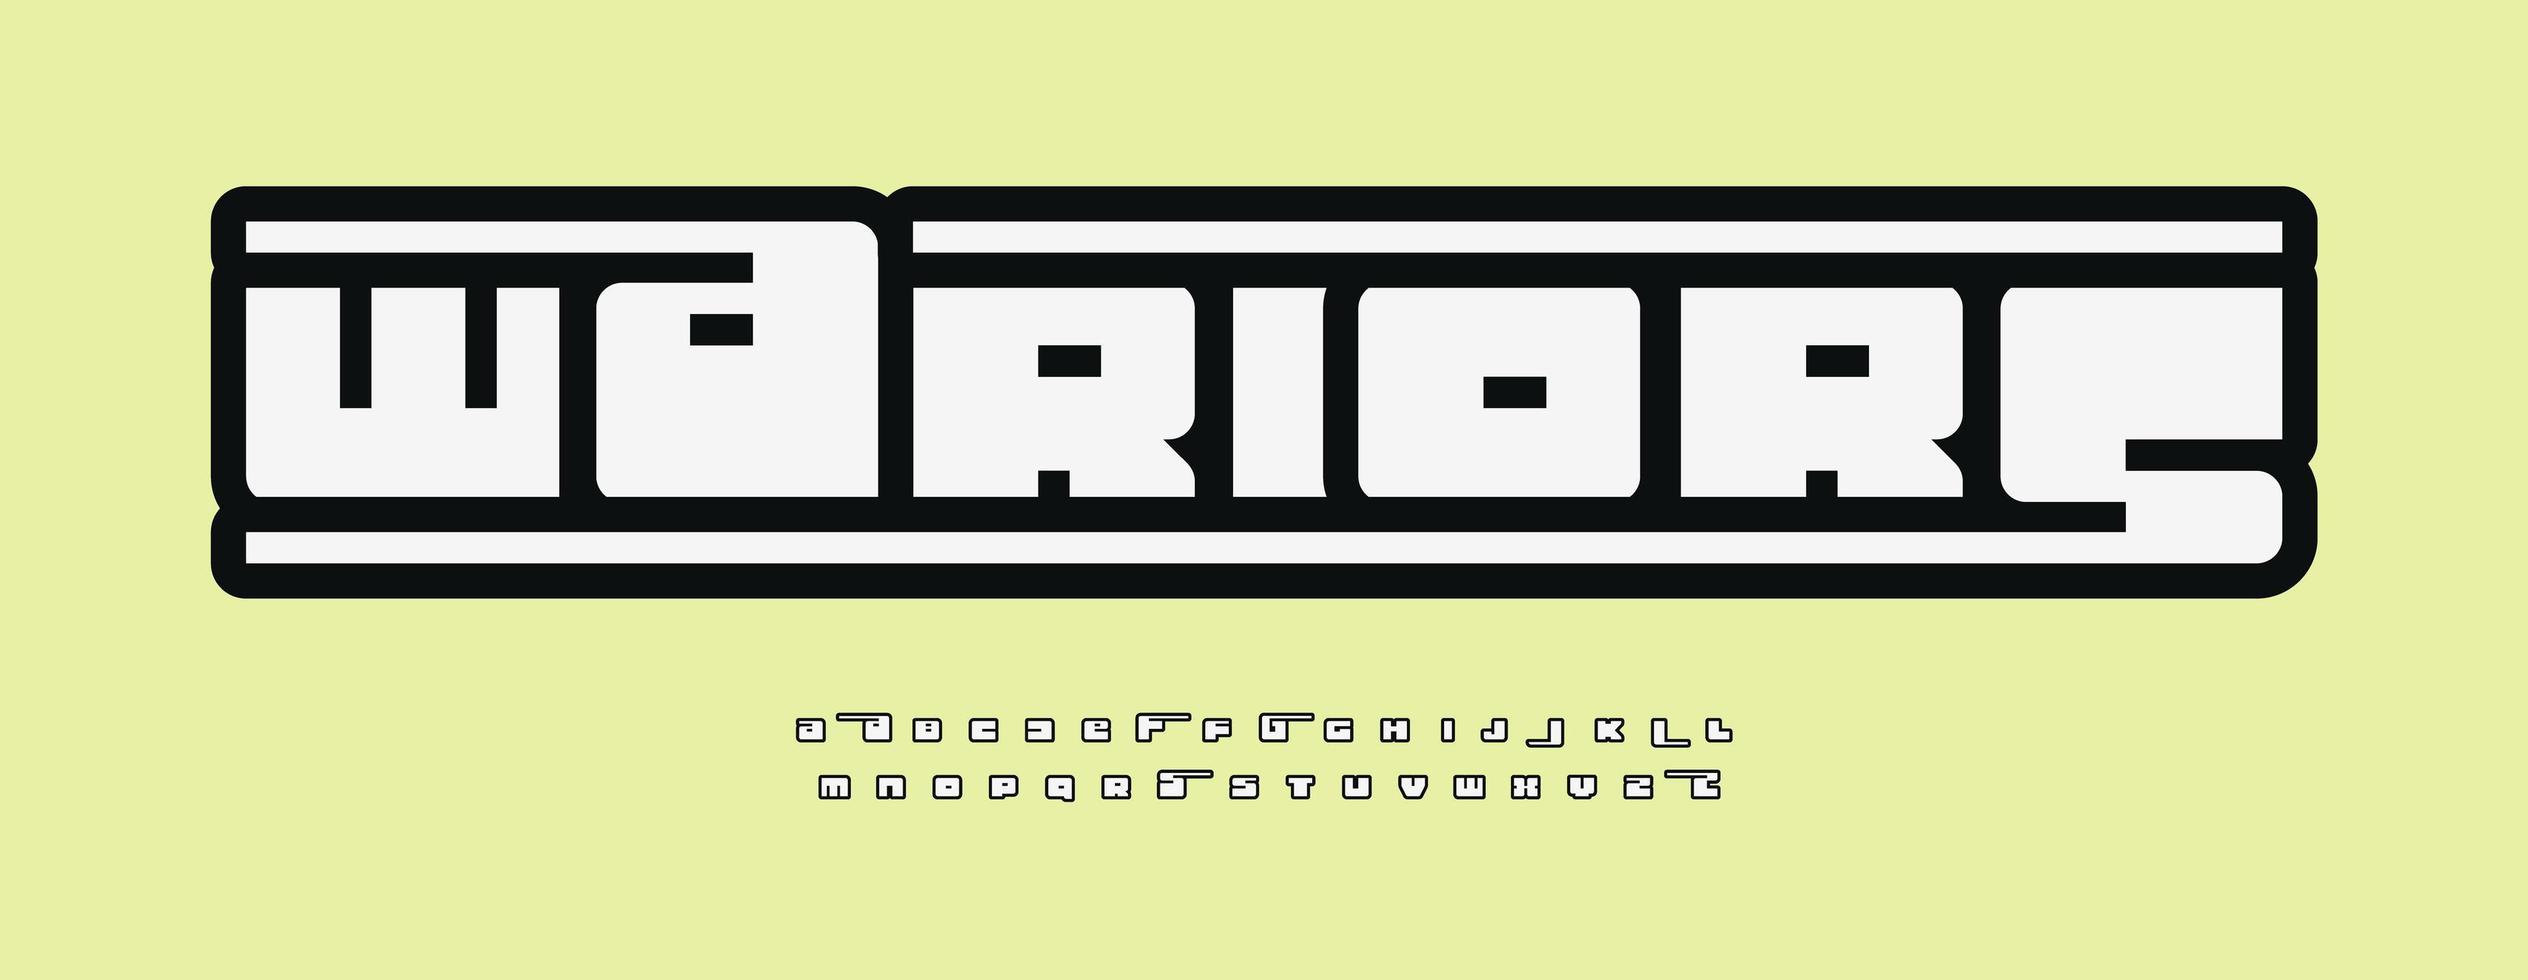 alfabeto modular moderno, letras blancas con contorno negro, tipo de estilo minimalista geométrico para logotipo de automóvil moderno, gran título, monograma, letras de juegos y tipografía. diseño moderno de fuente en negrita vector